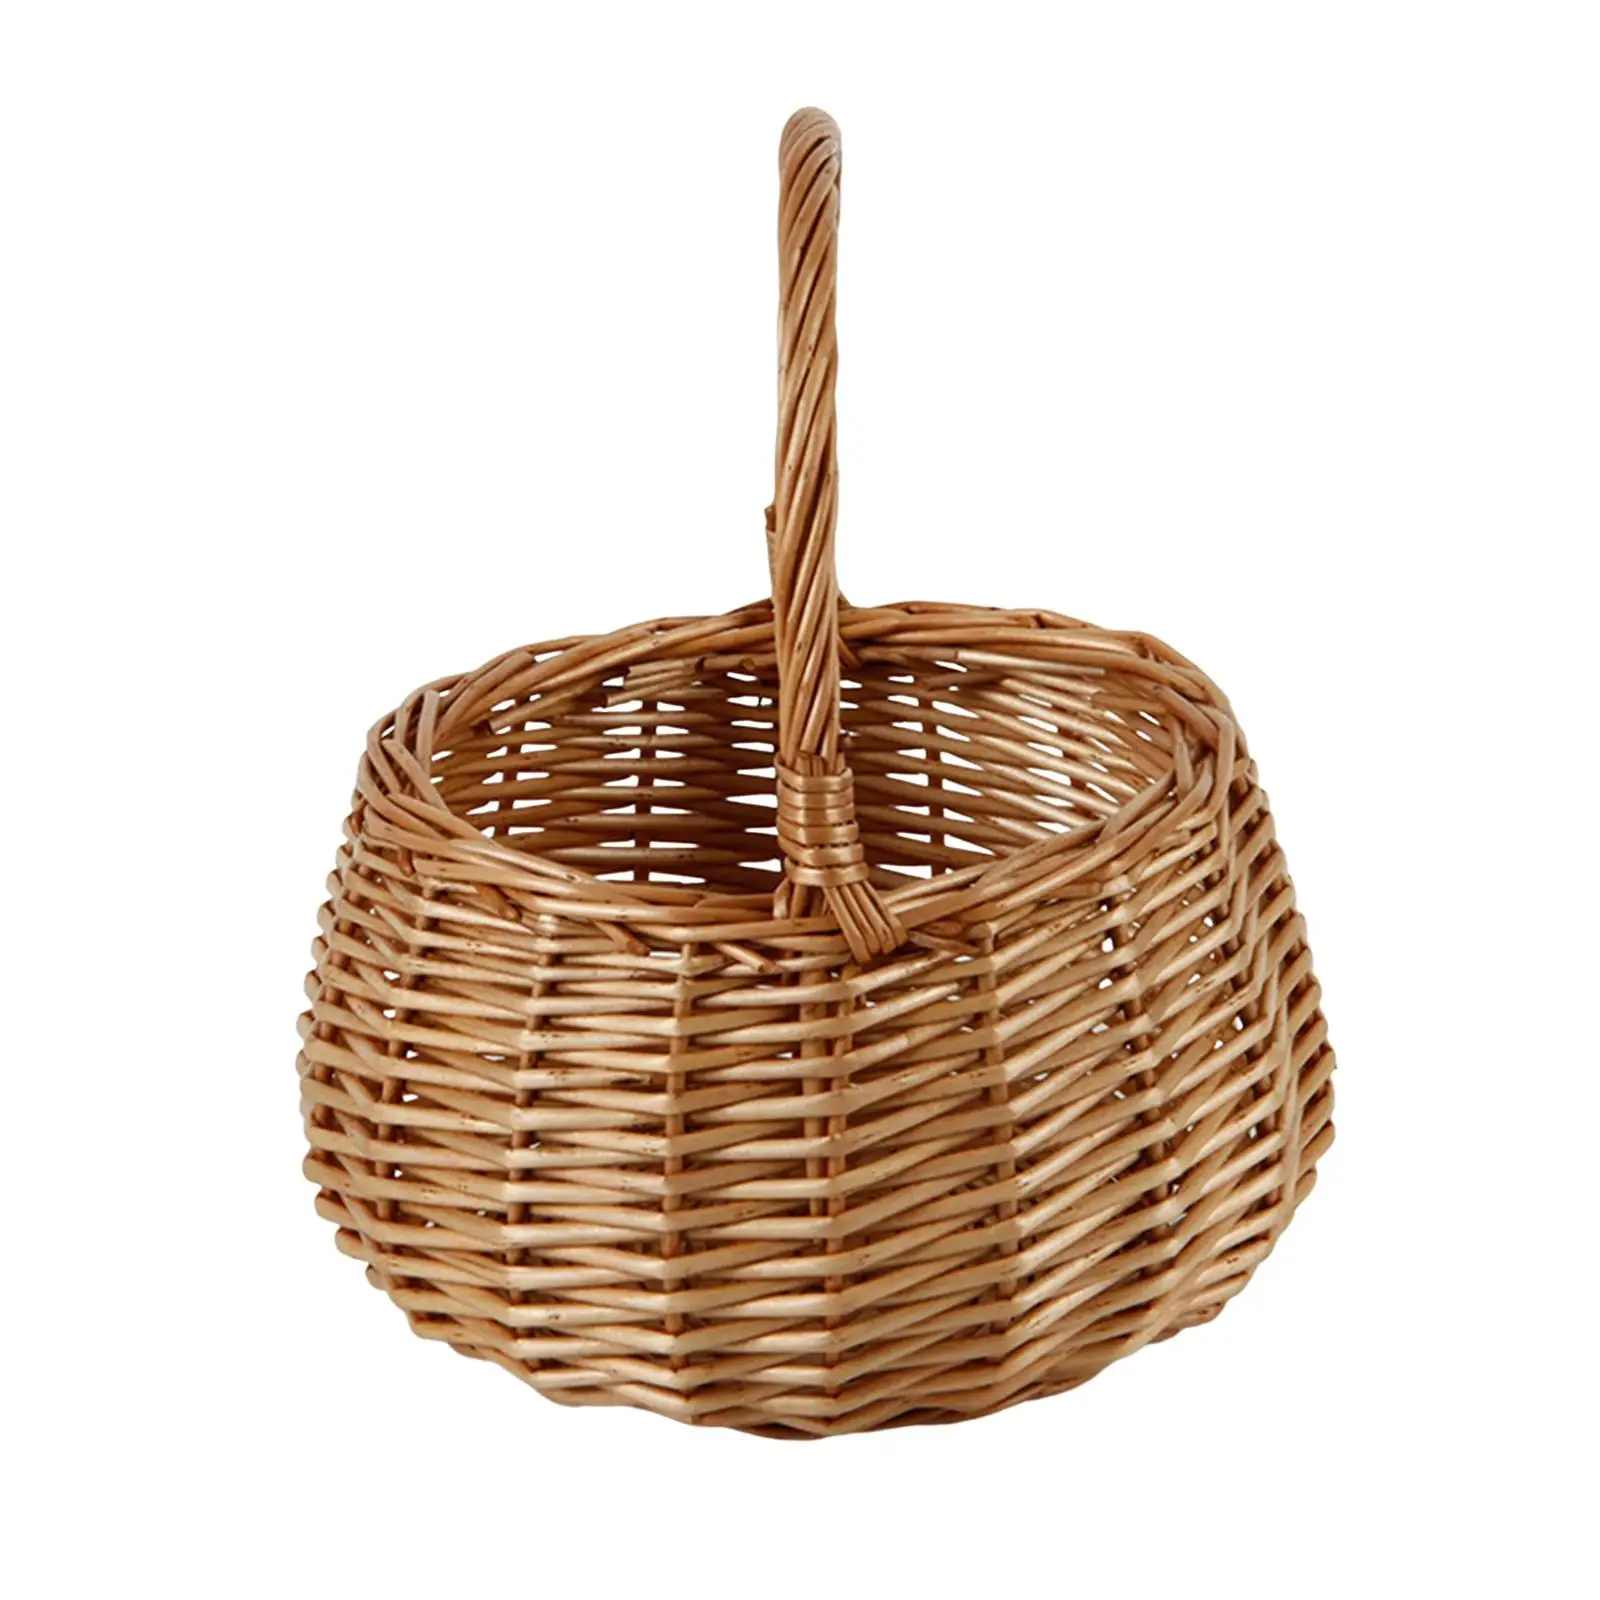 Wicker Storage Baskets Reusable Hand Basket Crafts Multipurpose Organizer Hand